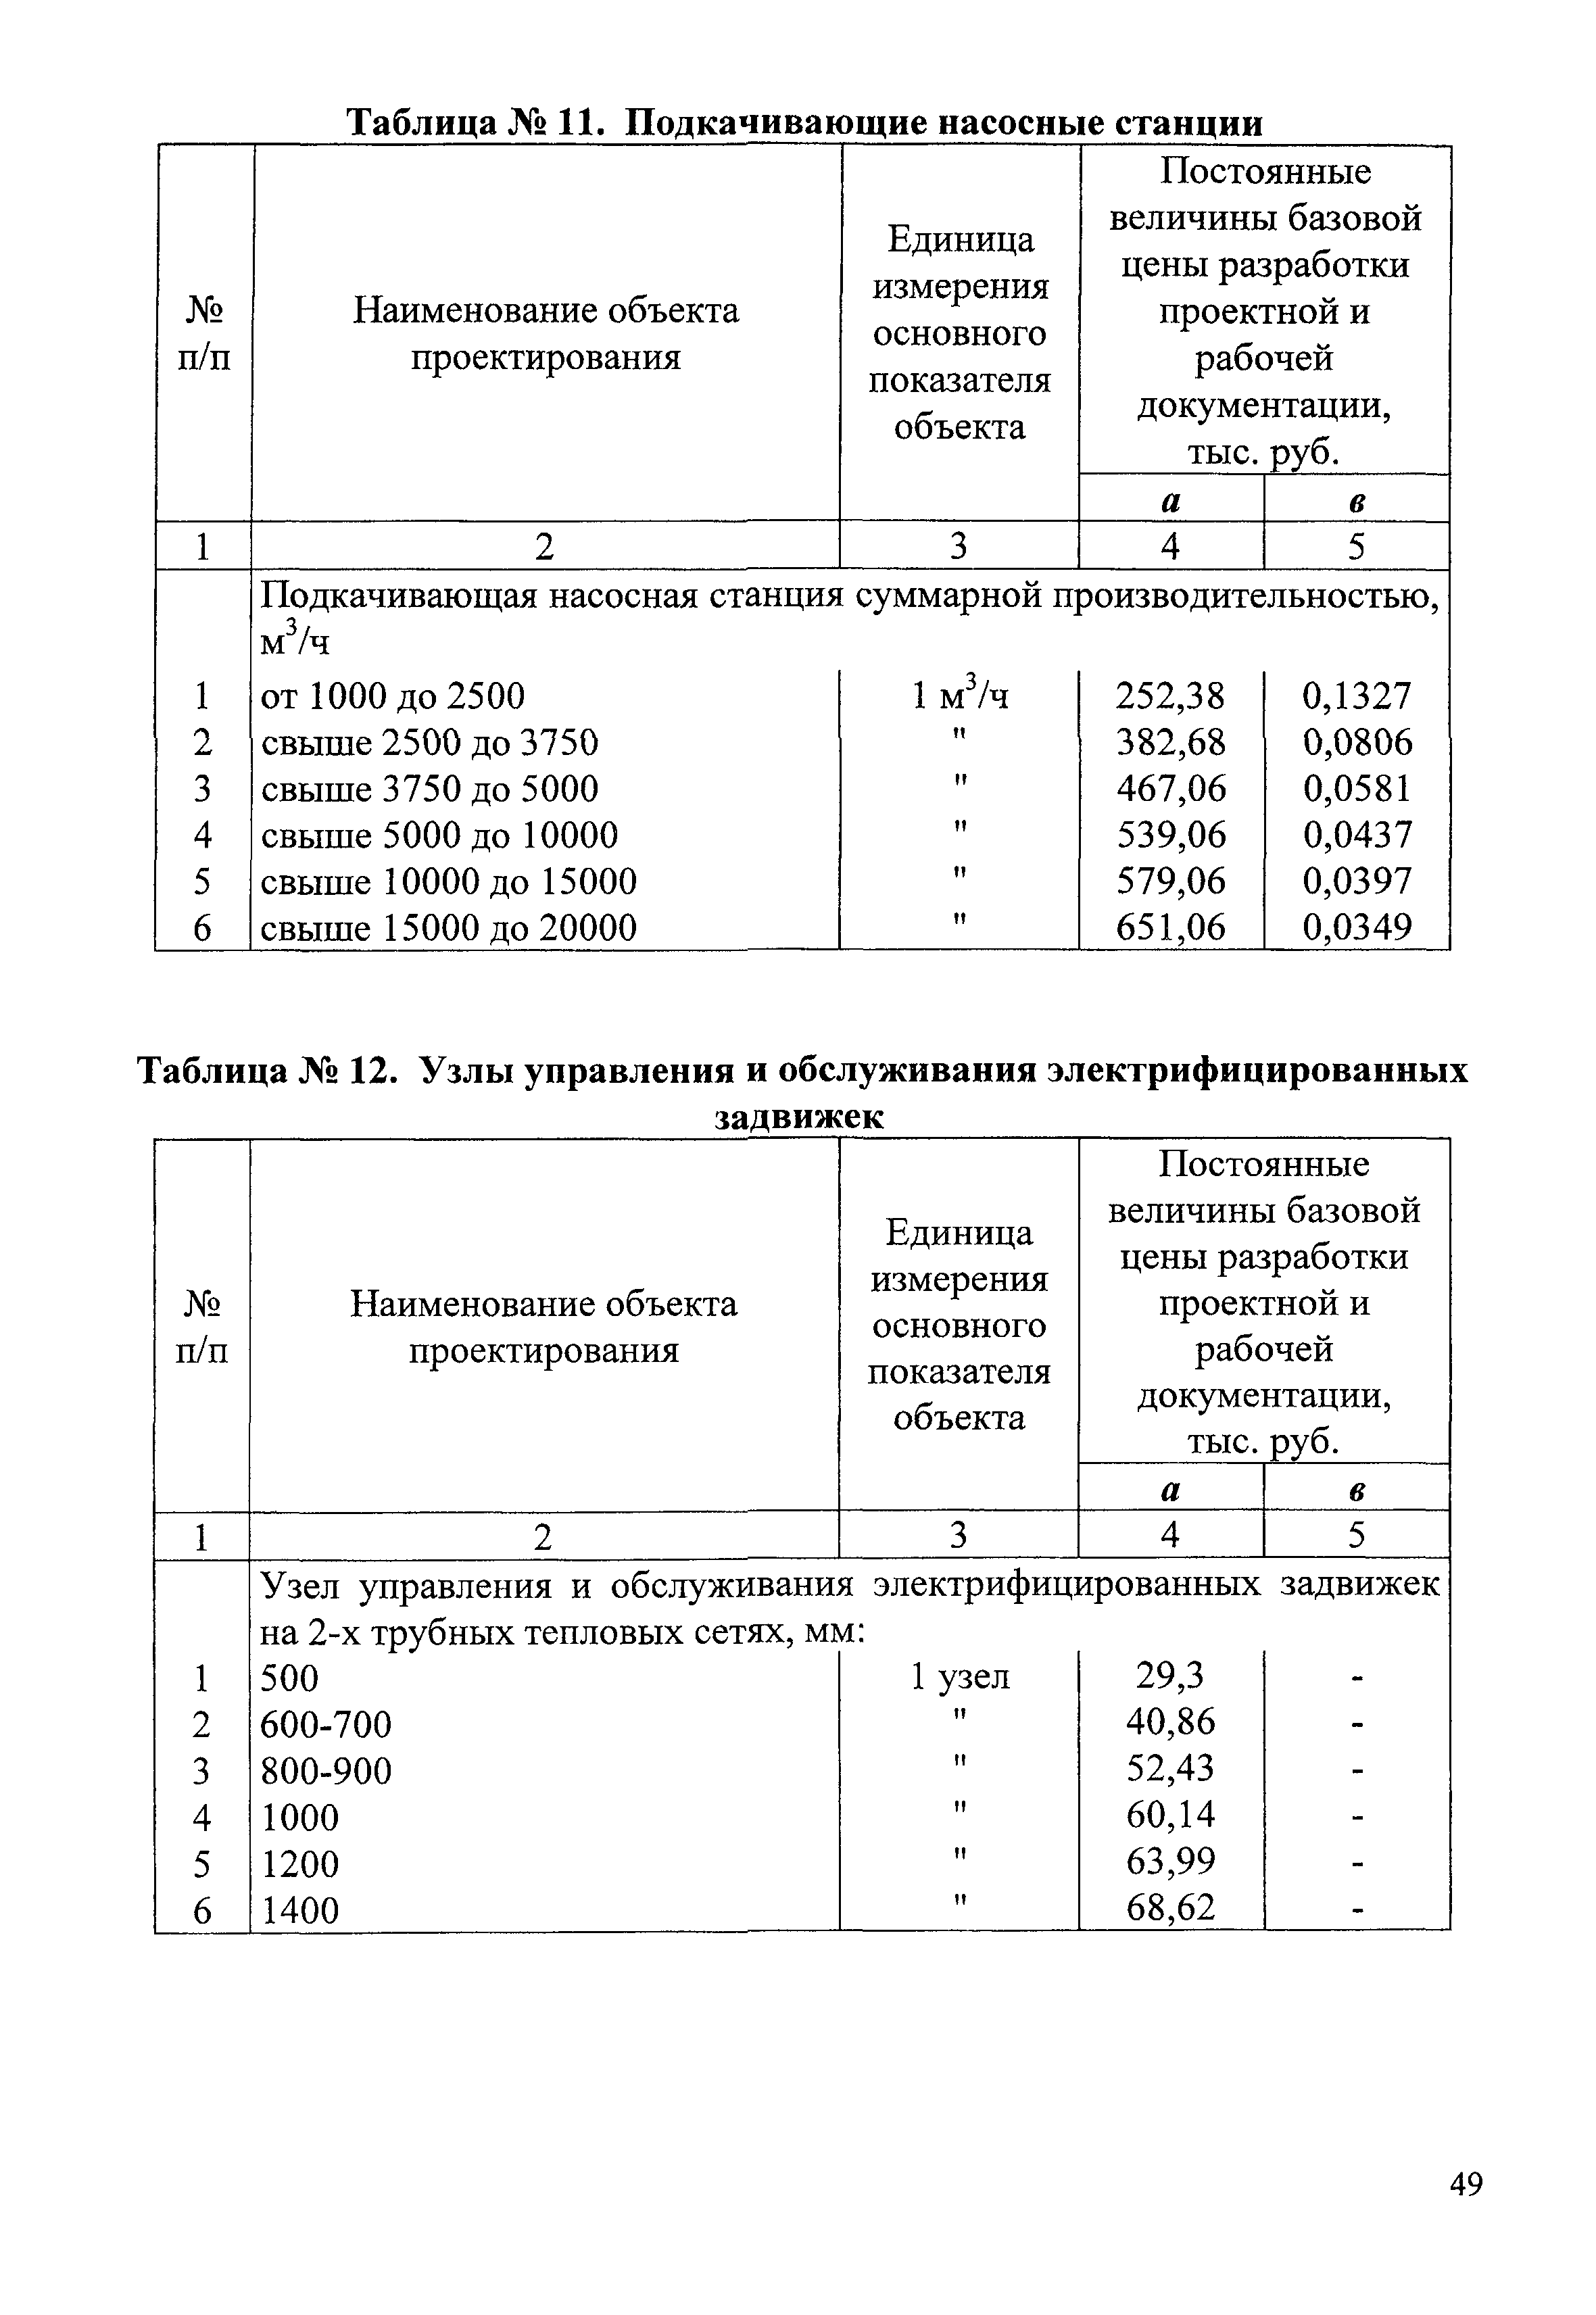 СБЦП 81-2001-07